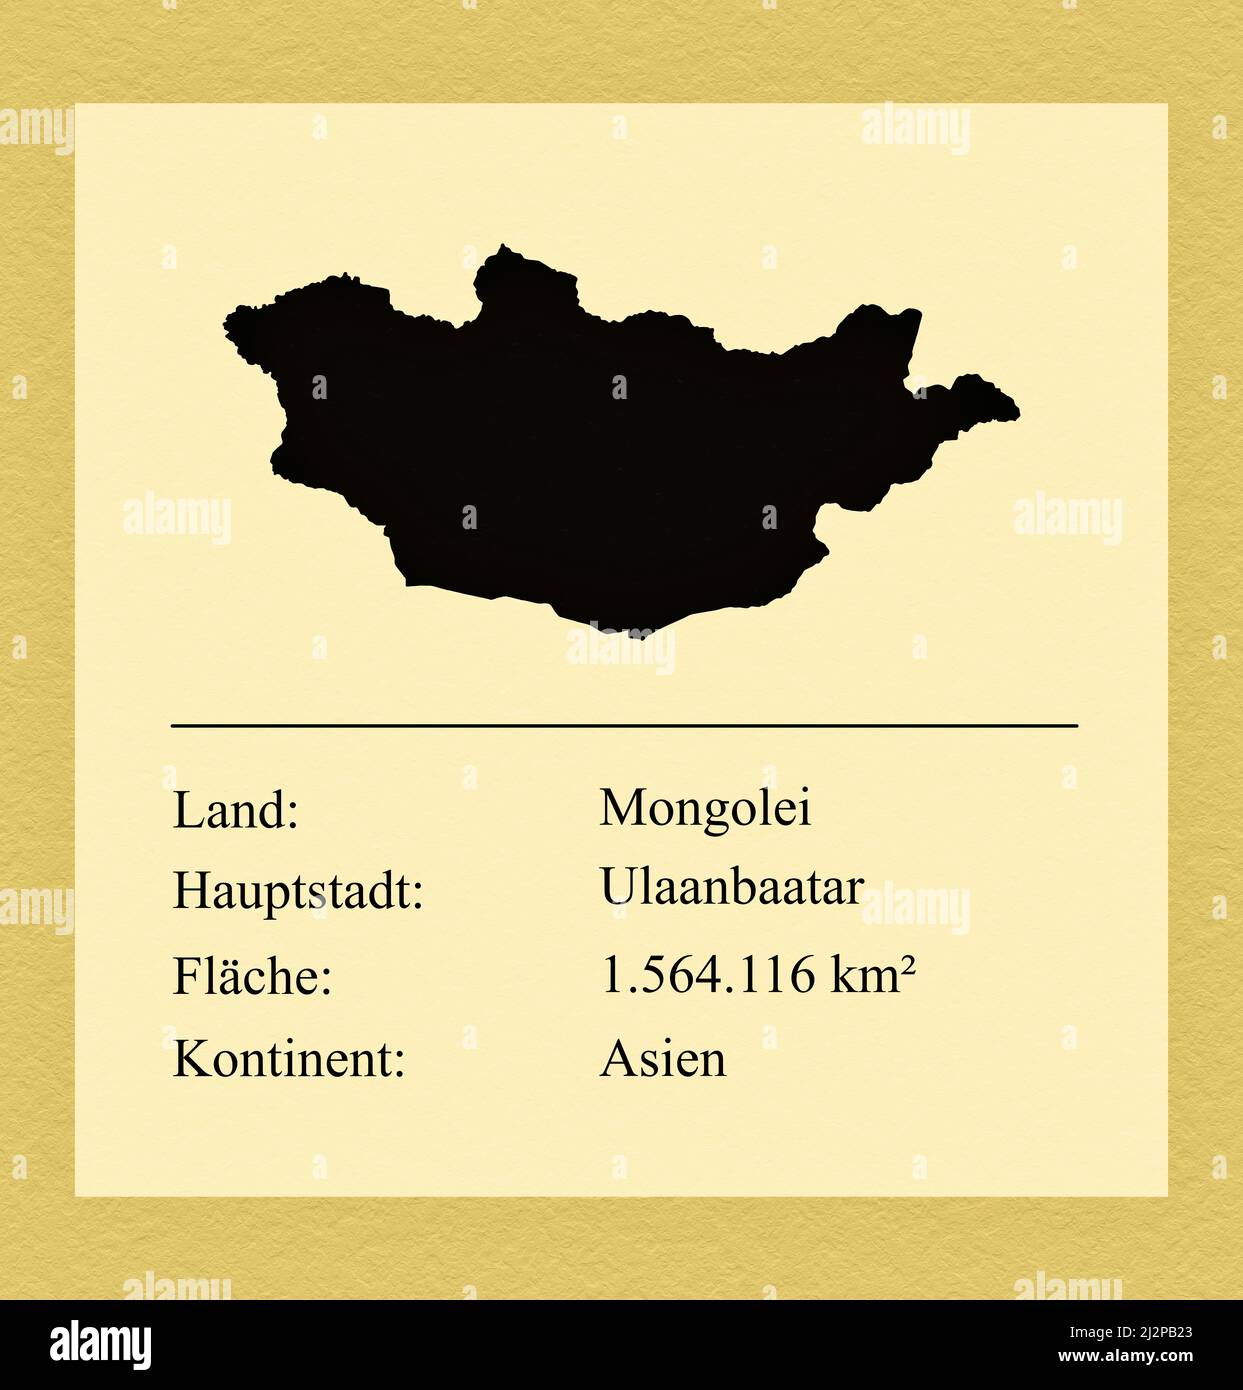 Umrisse des Landes Mongolei, darunter ein kleiner Steckbrief mit Ländernamen, Hauptstadt, Fläche und Kontinent Foto Stock